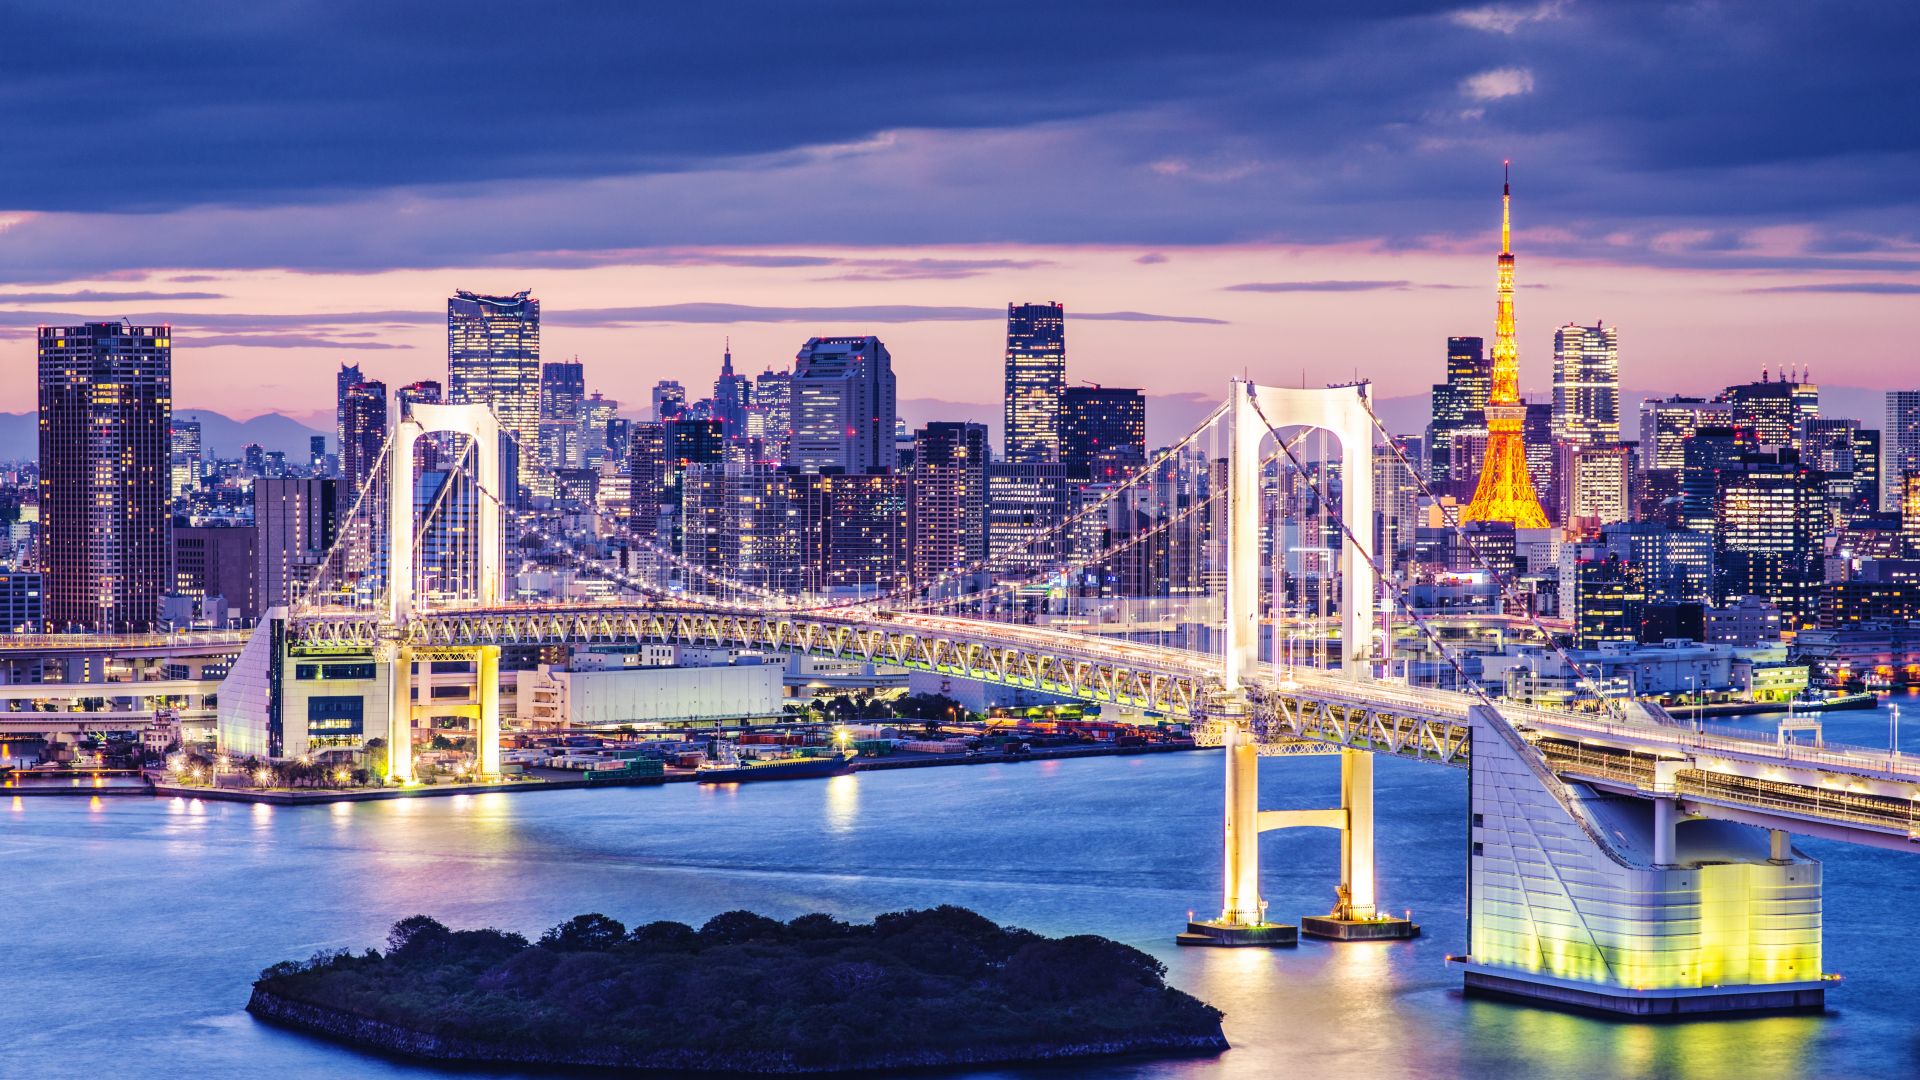 Токийский залив, Япония, мост, ночь, путешествия, туризм, Tokyo Bay, Japan, bridge, night, travel, tourism (horizontal)